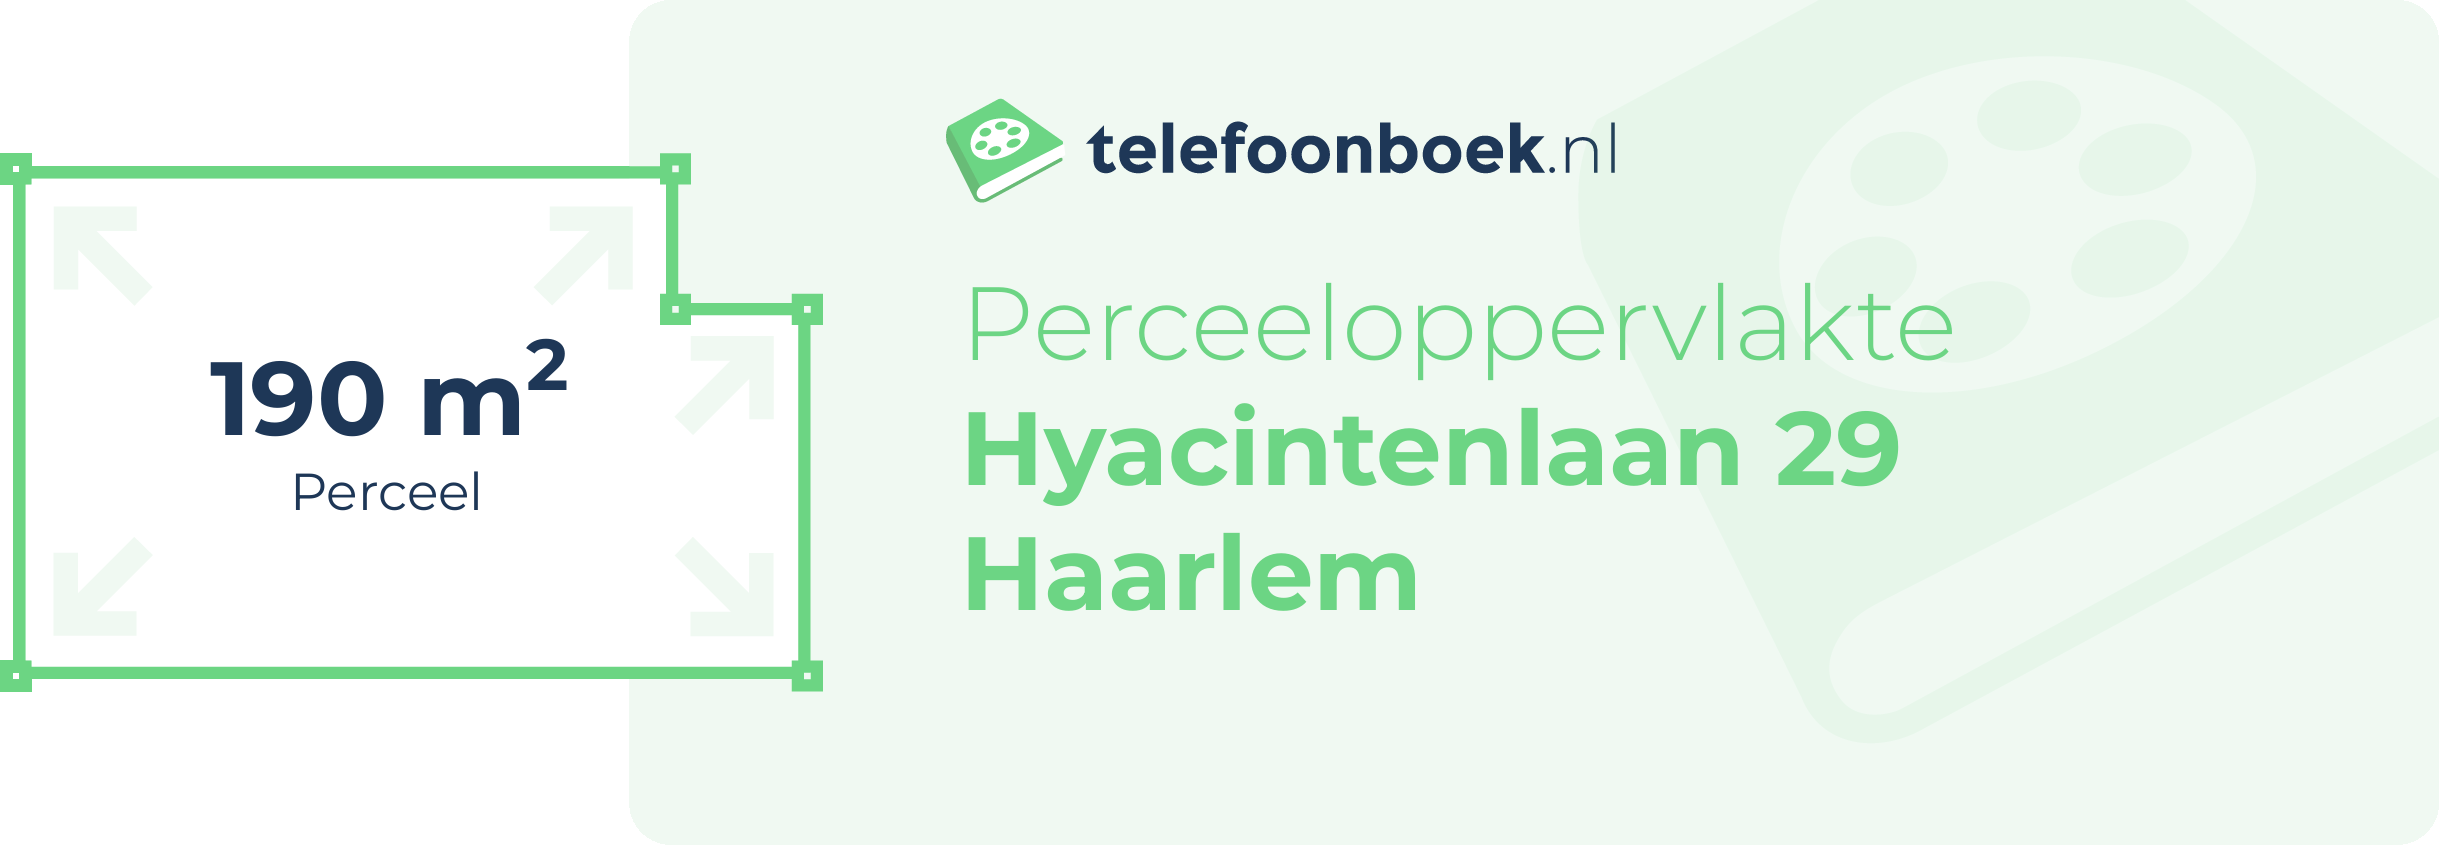 Perceeloppervlakte Hyacintenlaan 29 Haarlem